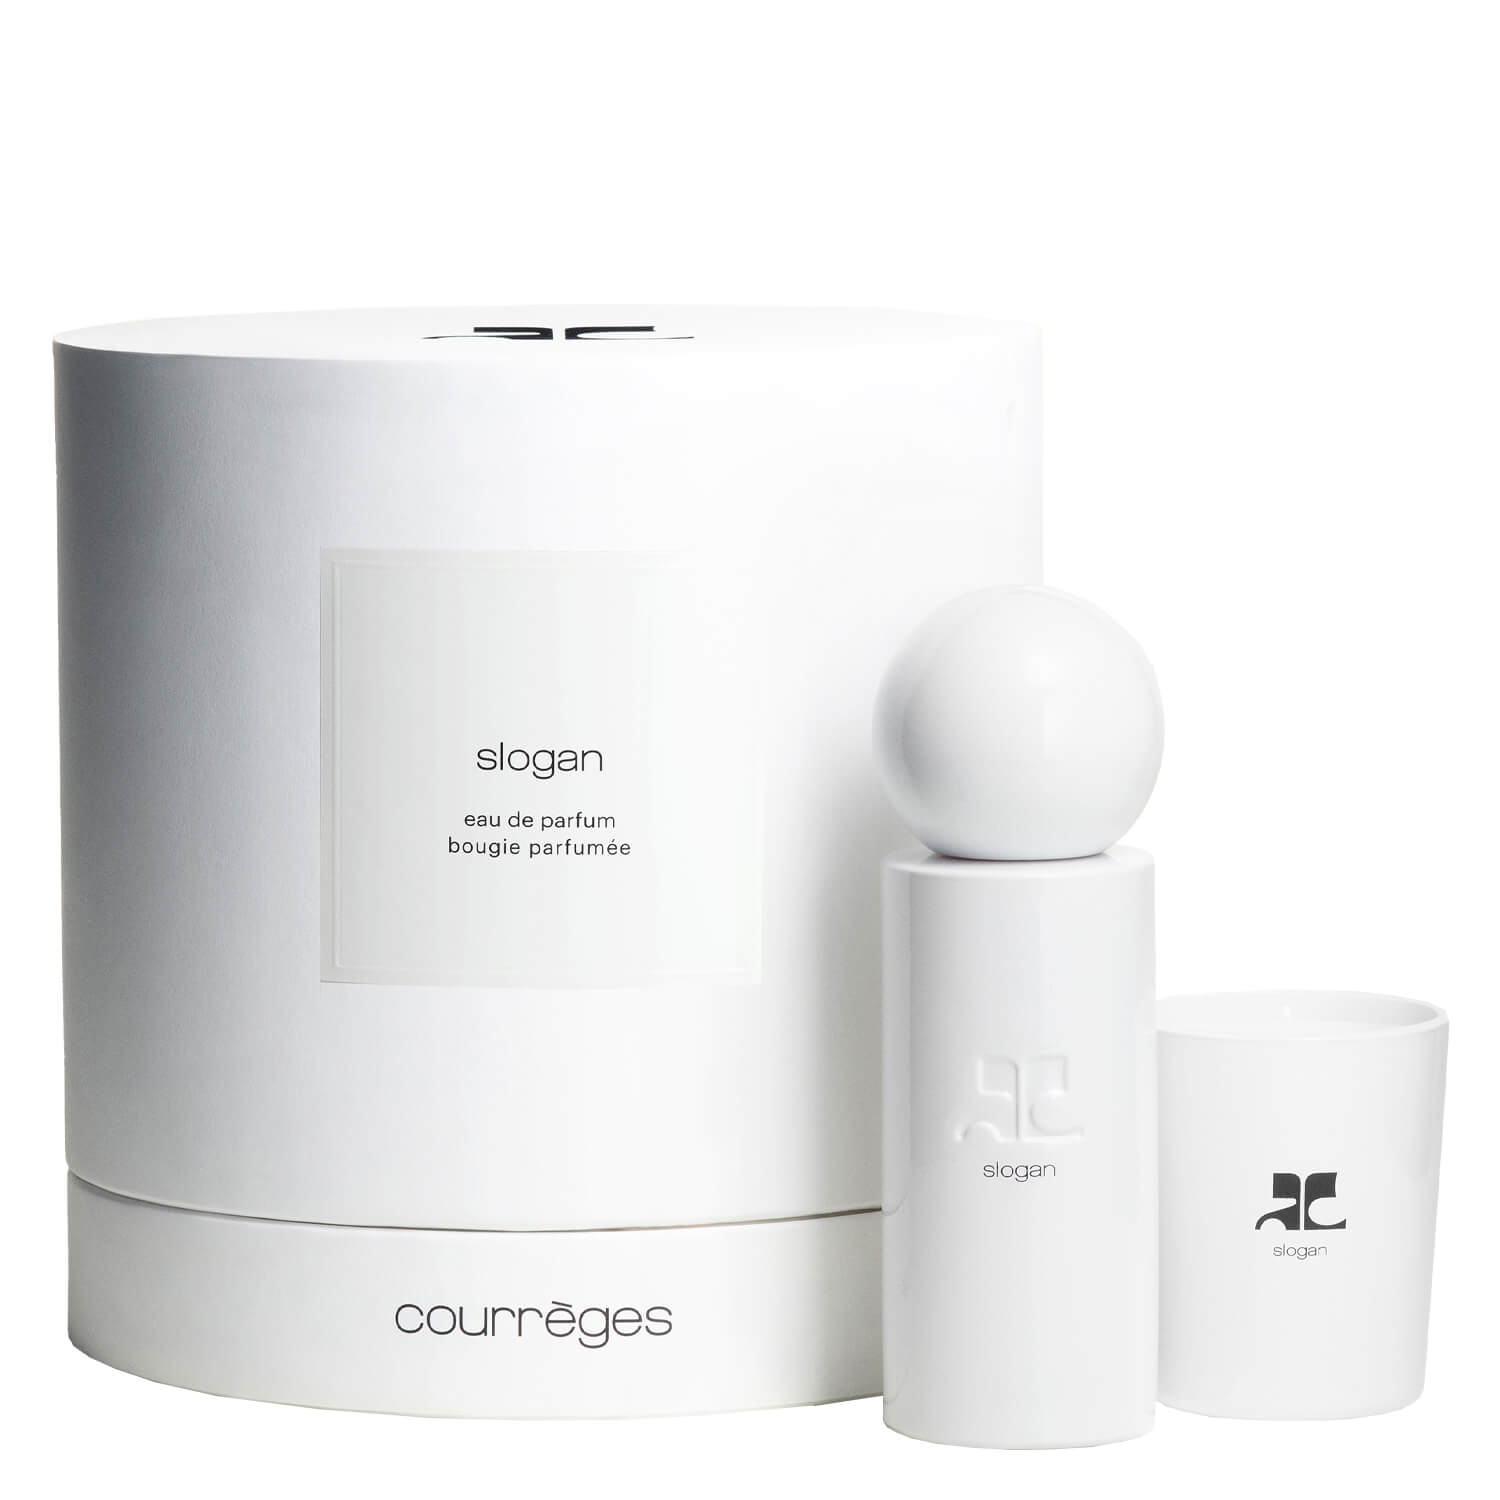 Product image from courrèges - slogan eau de parfum Set